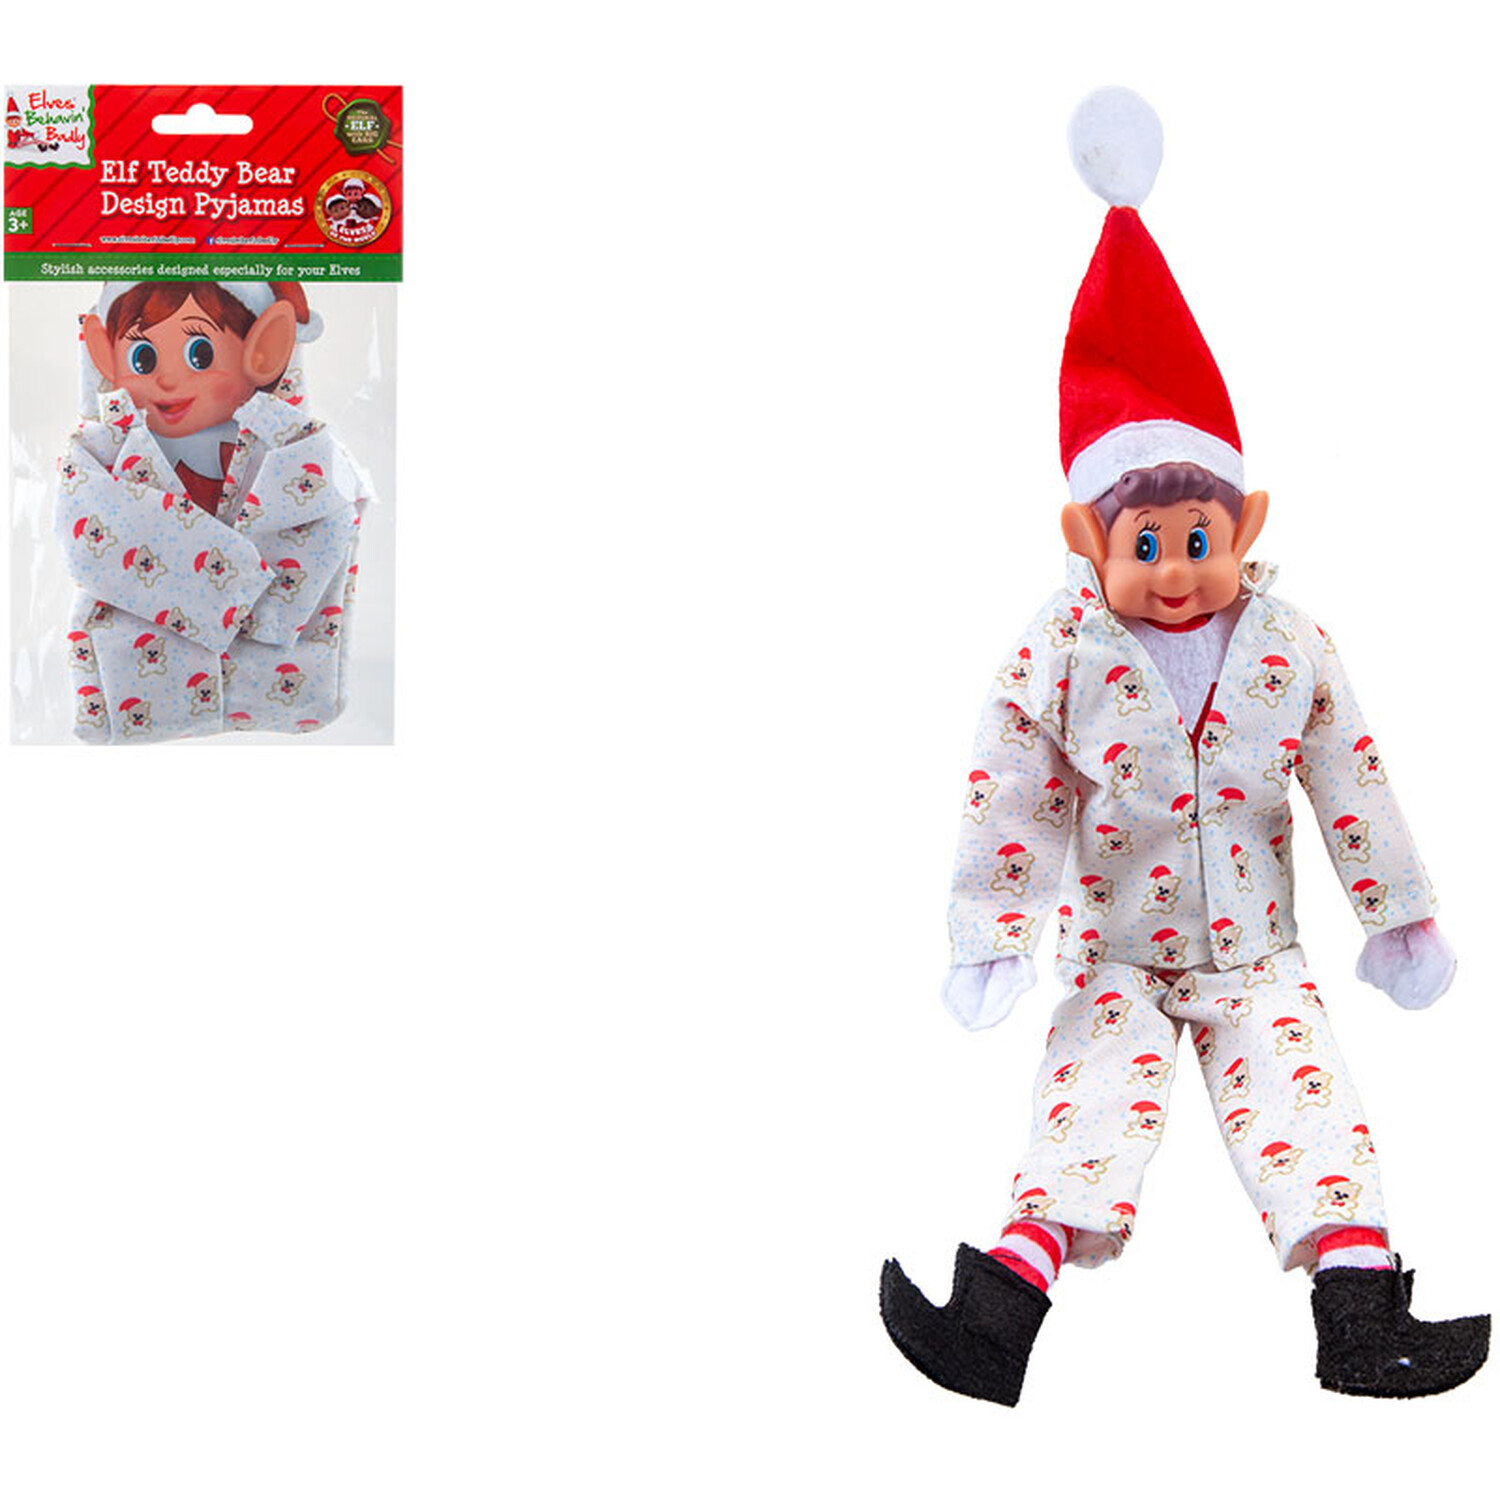 Elf Bear Design Pyjamas Outfit Image